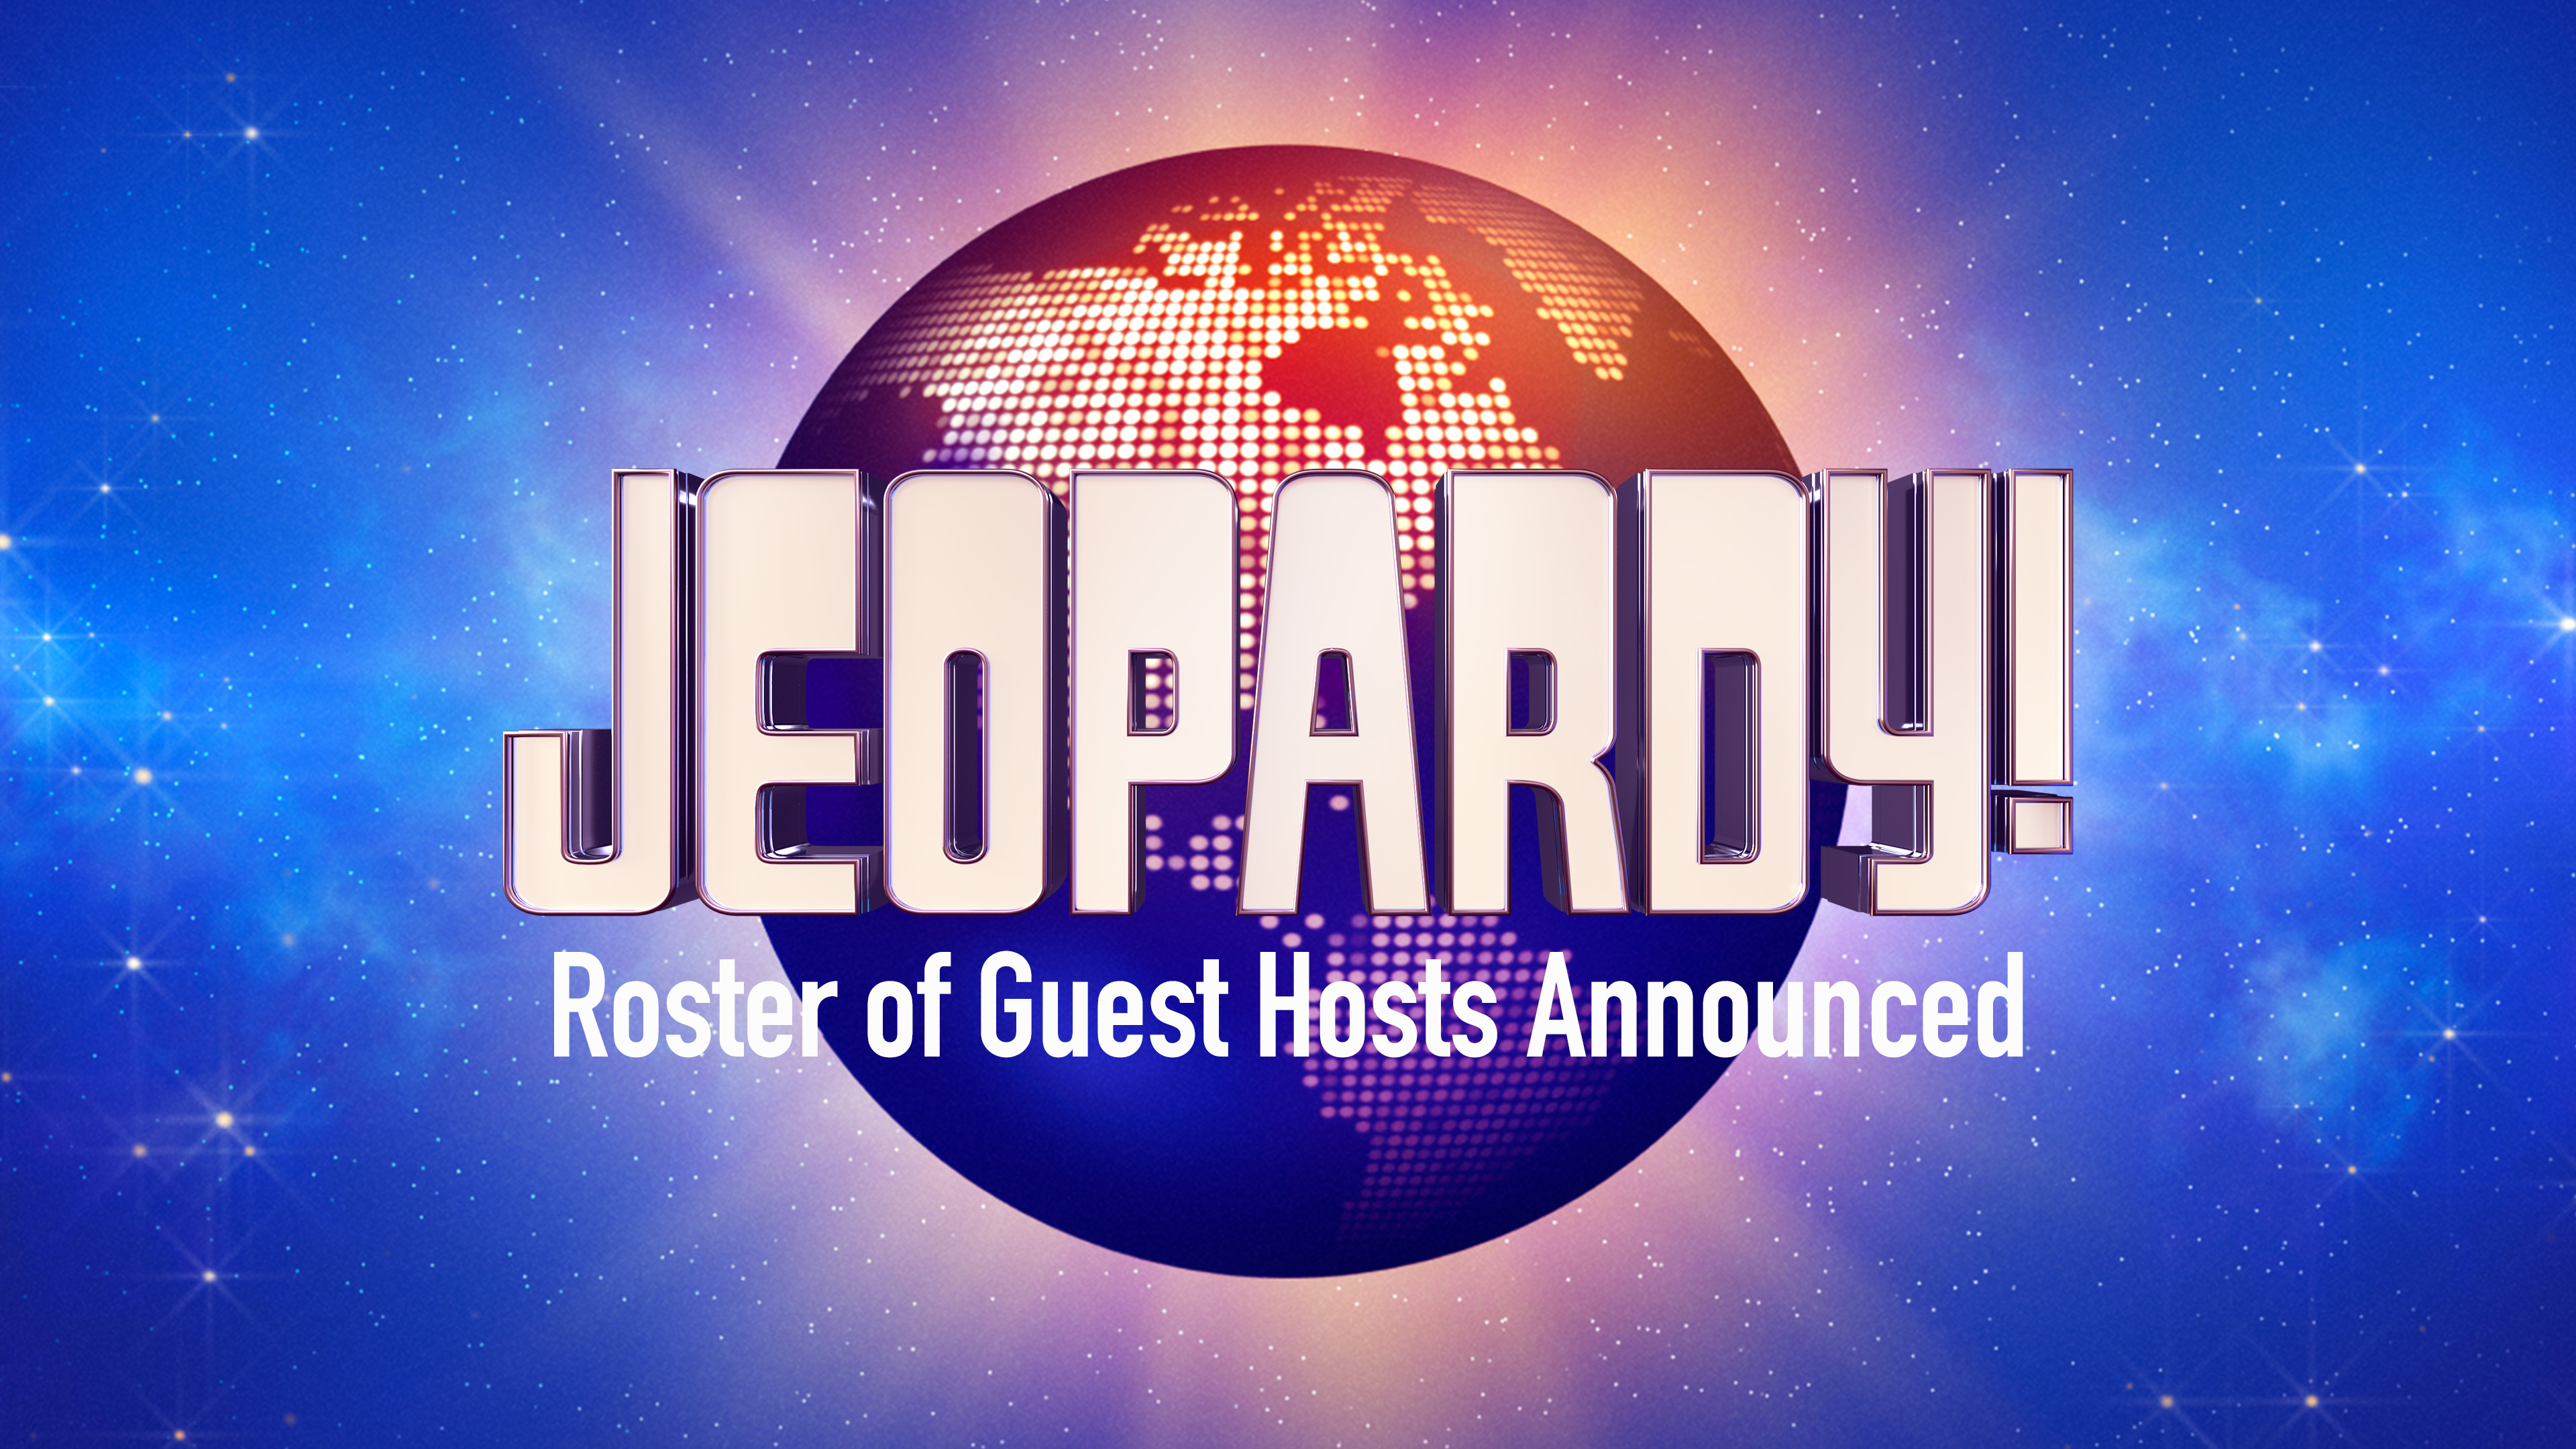 www.jeopardy.com